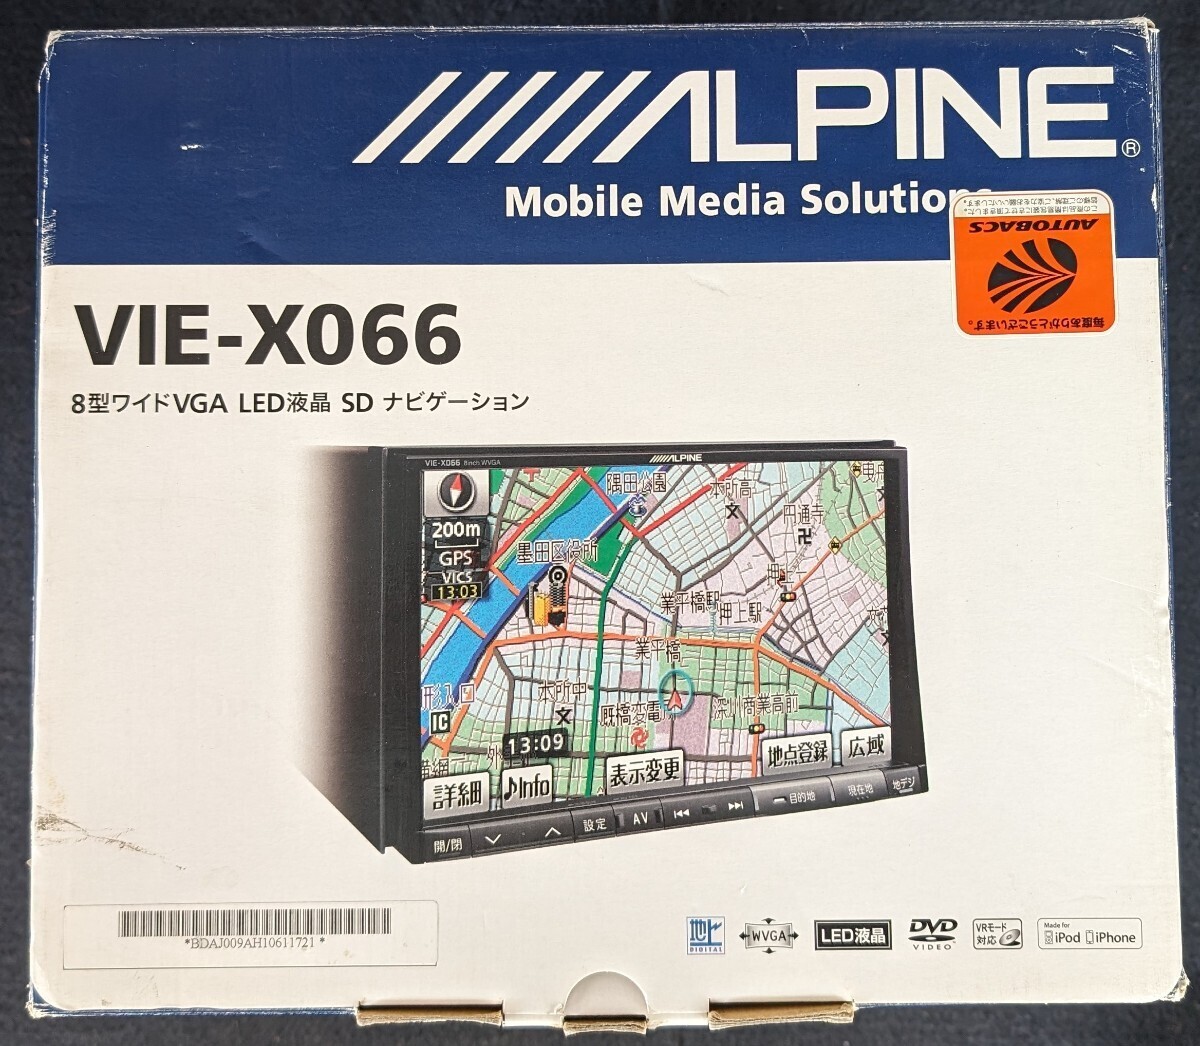 アルパイン BIG-X 8インチ 大画面 SDナビ 新品アンテナ付 VIE-X066 CD DVD 地デジ フルセグ 4×4 LED液晶 ALPINEの画像1